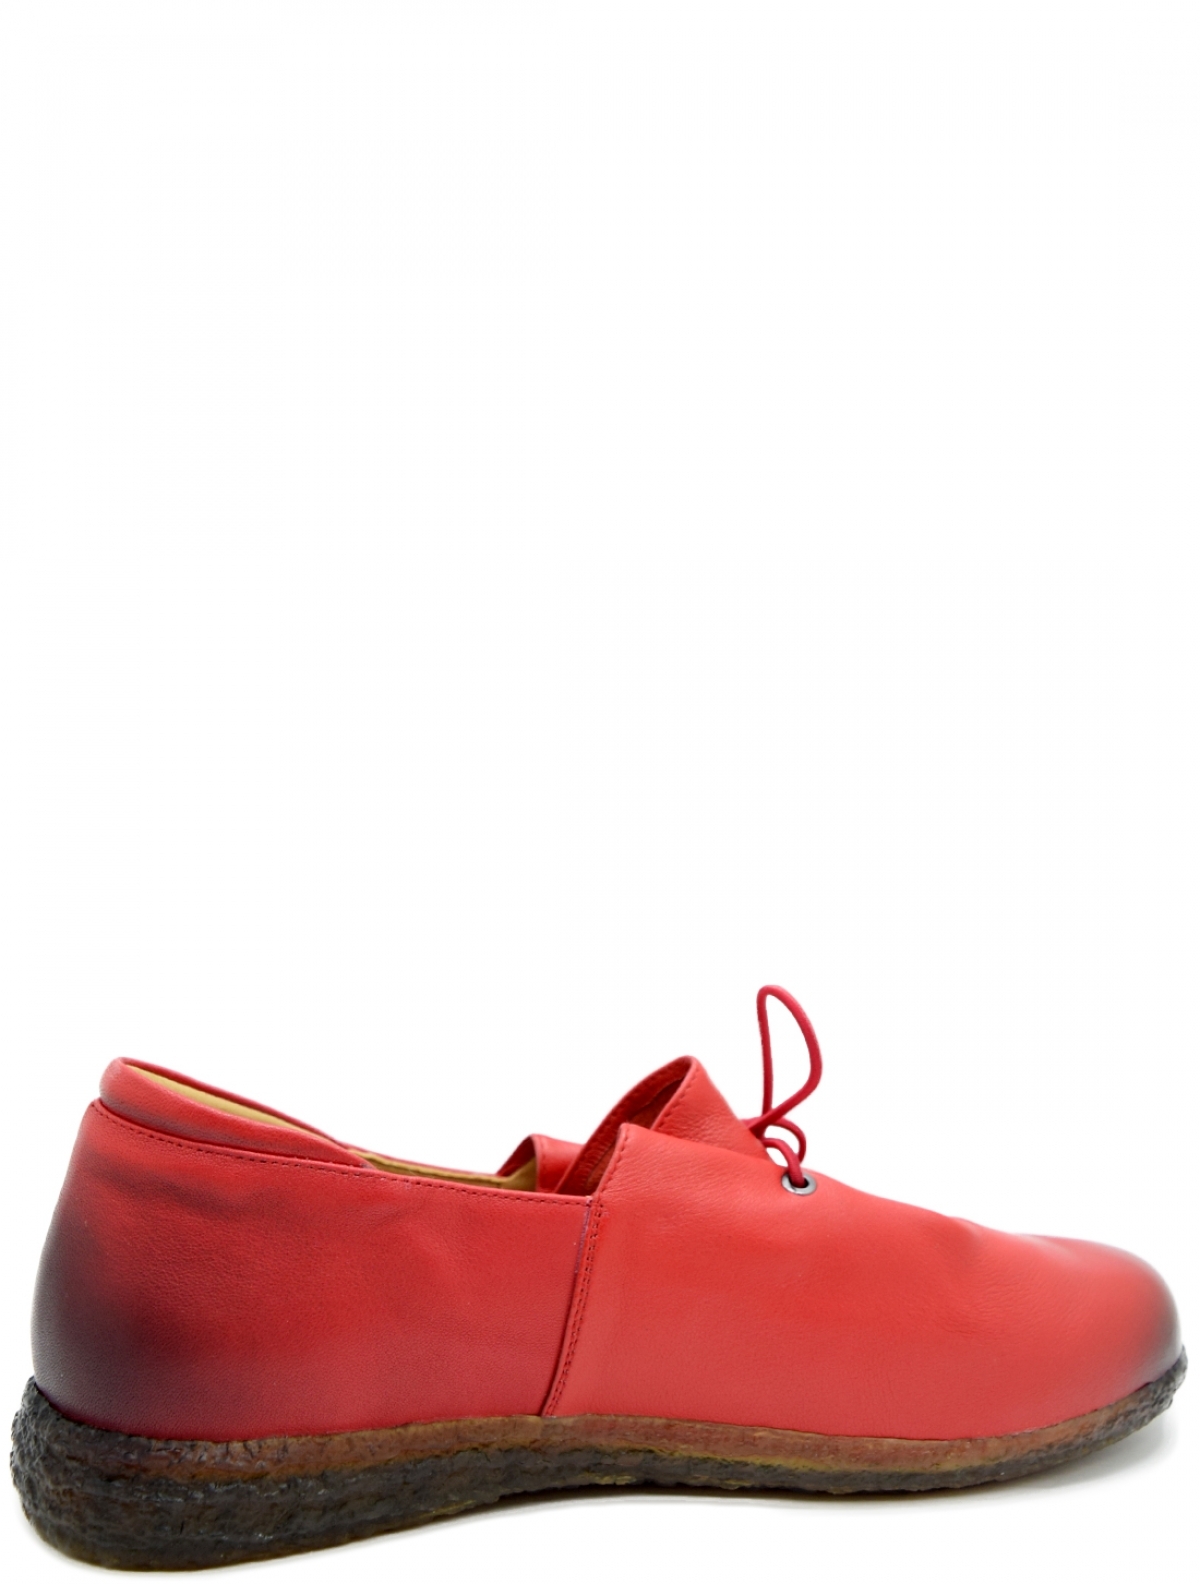 Madella XMG-91690-2K-KP женские туфли